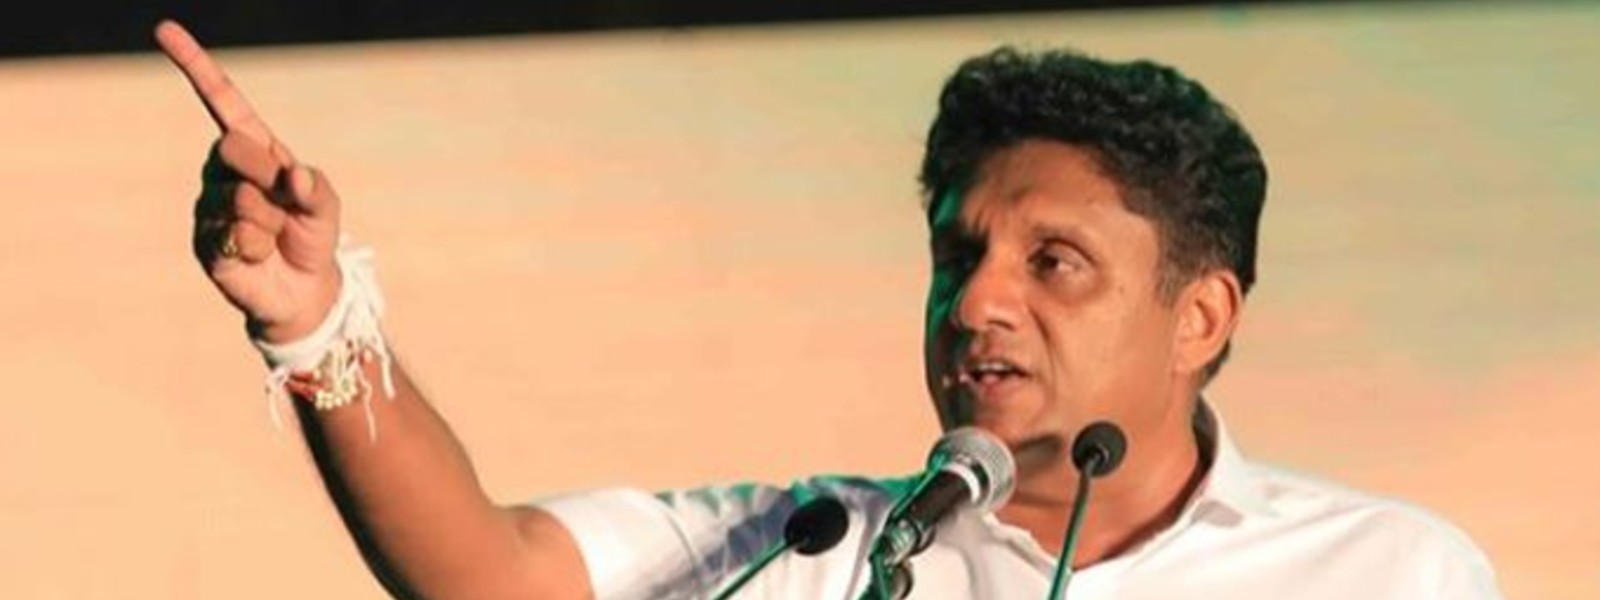 Sri Lanka’s Opposition Leader calls on Rajapaksa Govt to resign immediately